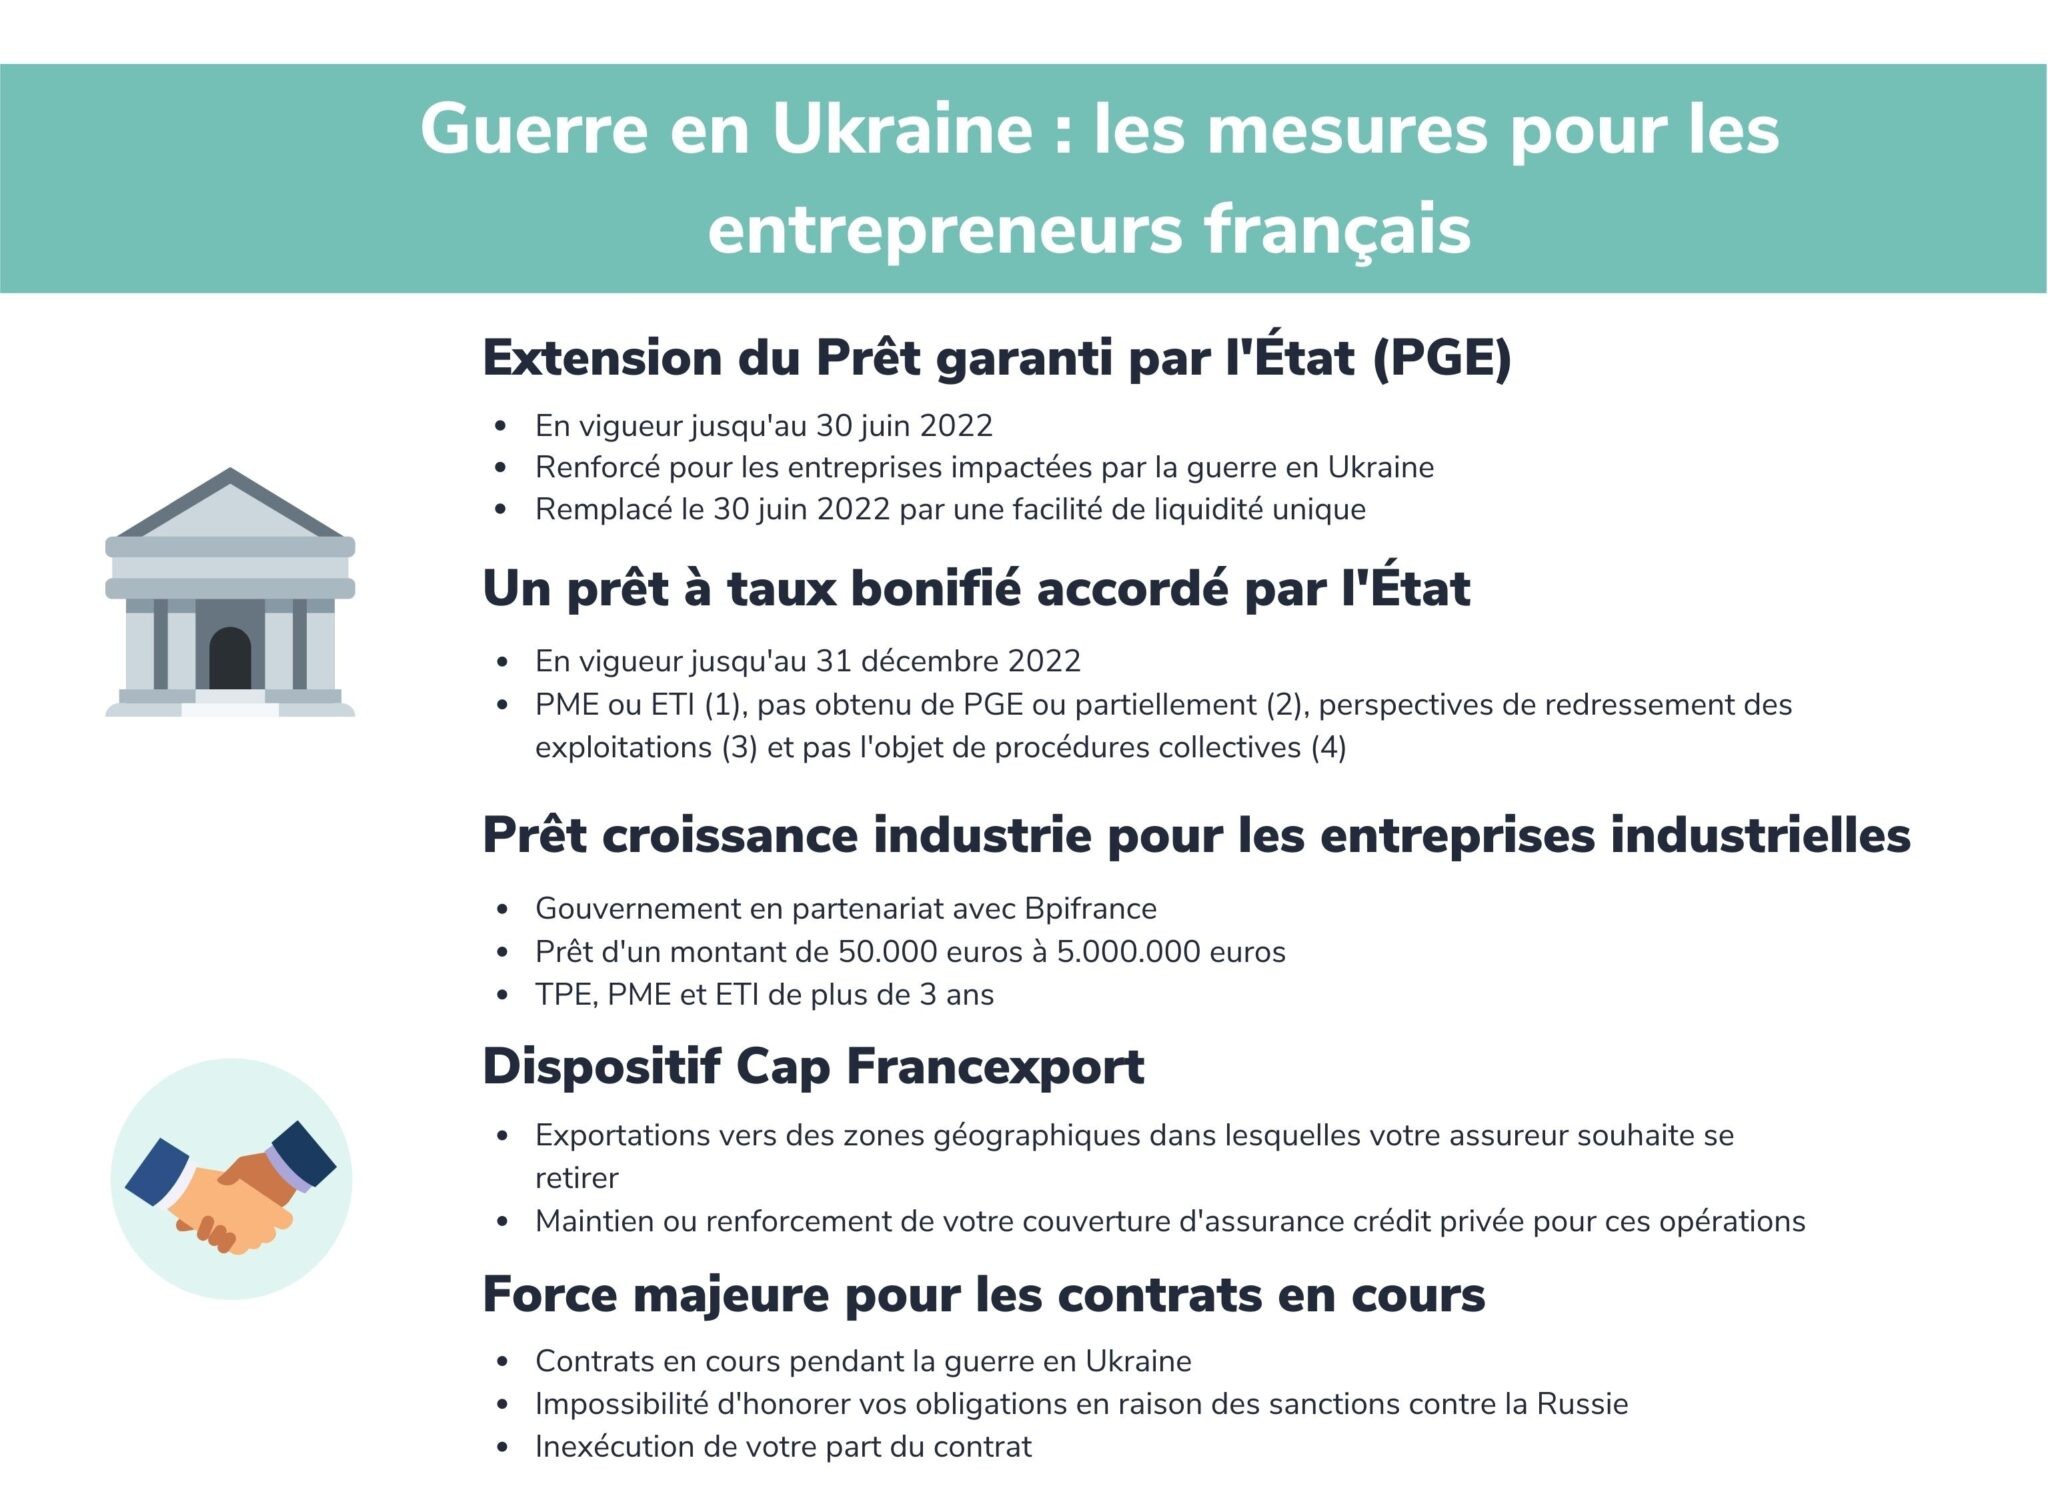 Guerre en Ukraine : les aides pour les entrepreneurs français